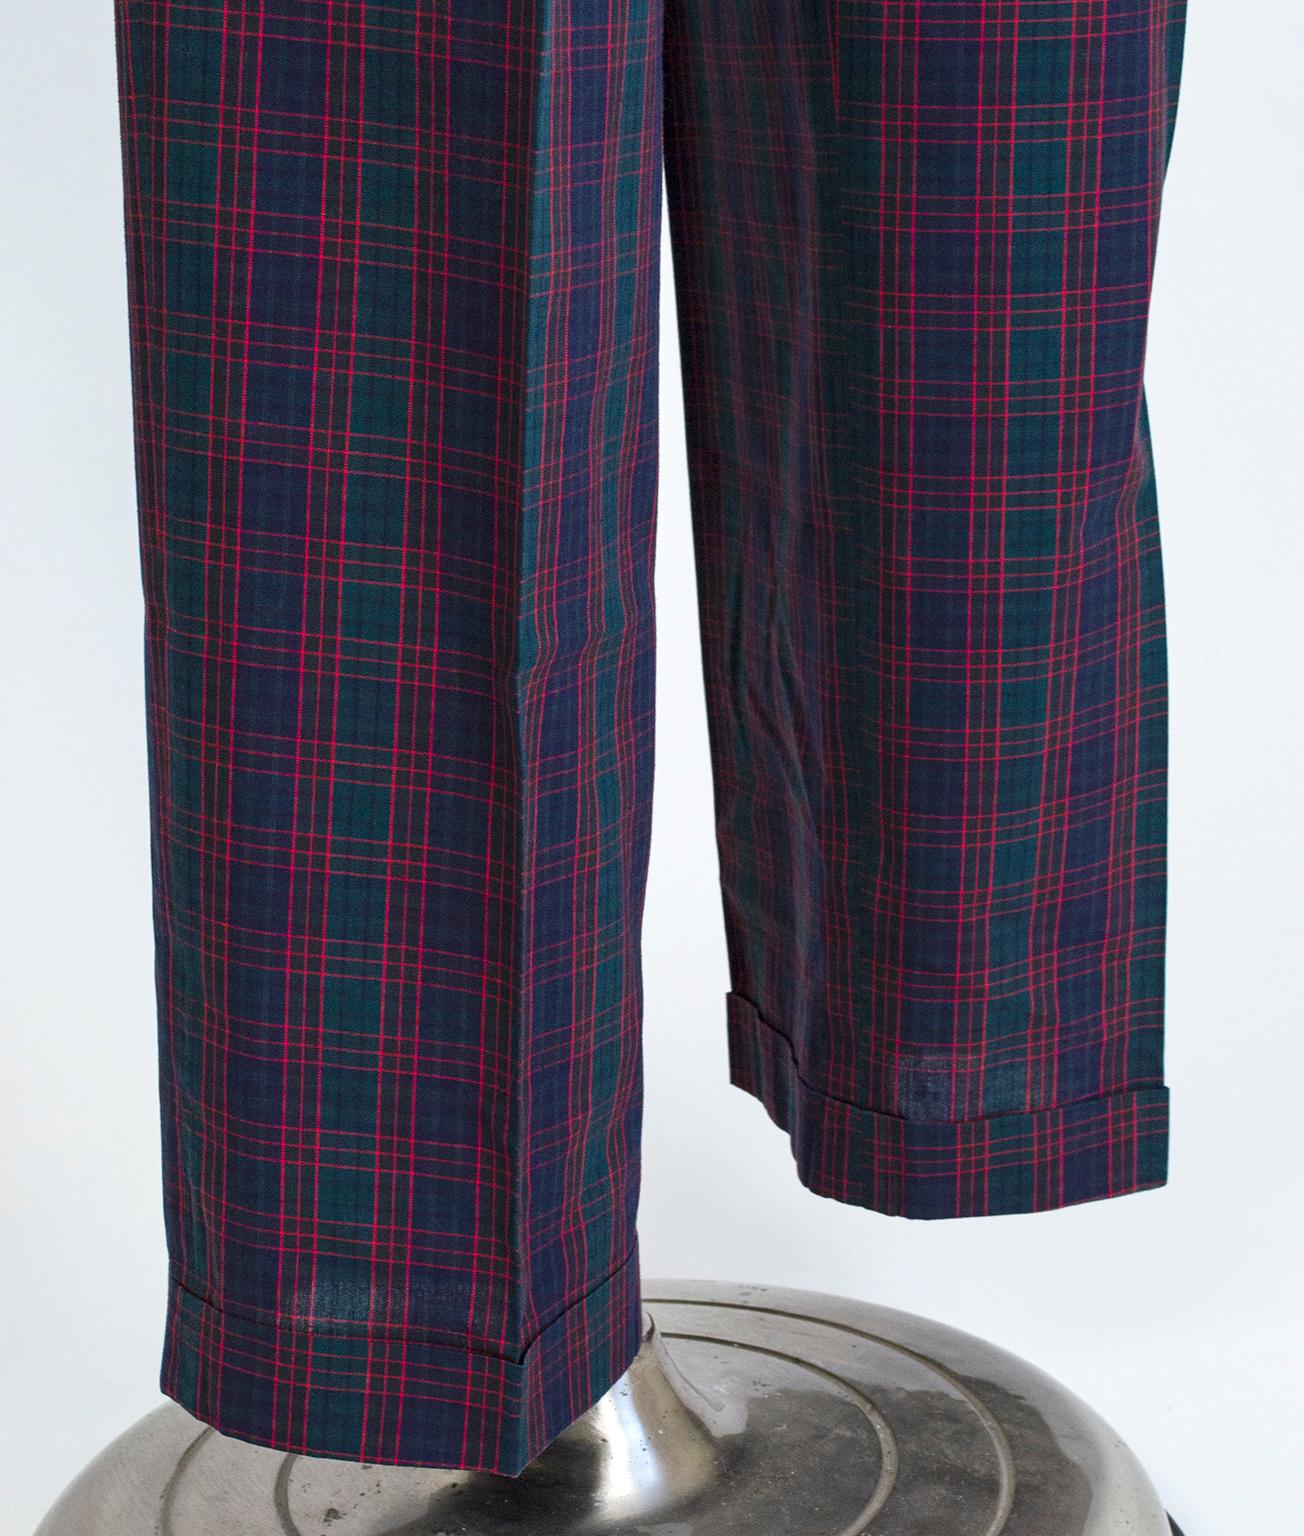 Pantalon de golf de vacances à carreaux en montre noire pour homme, Harrod's - 38